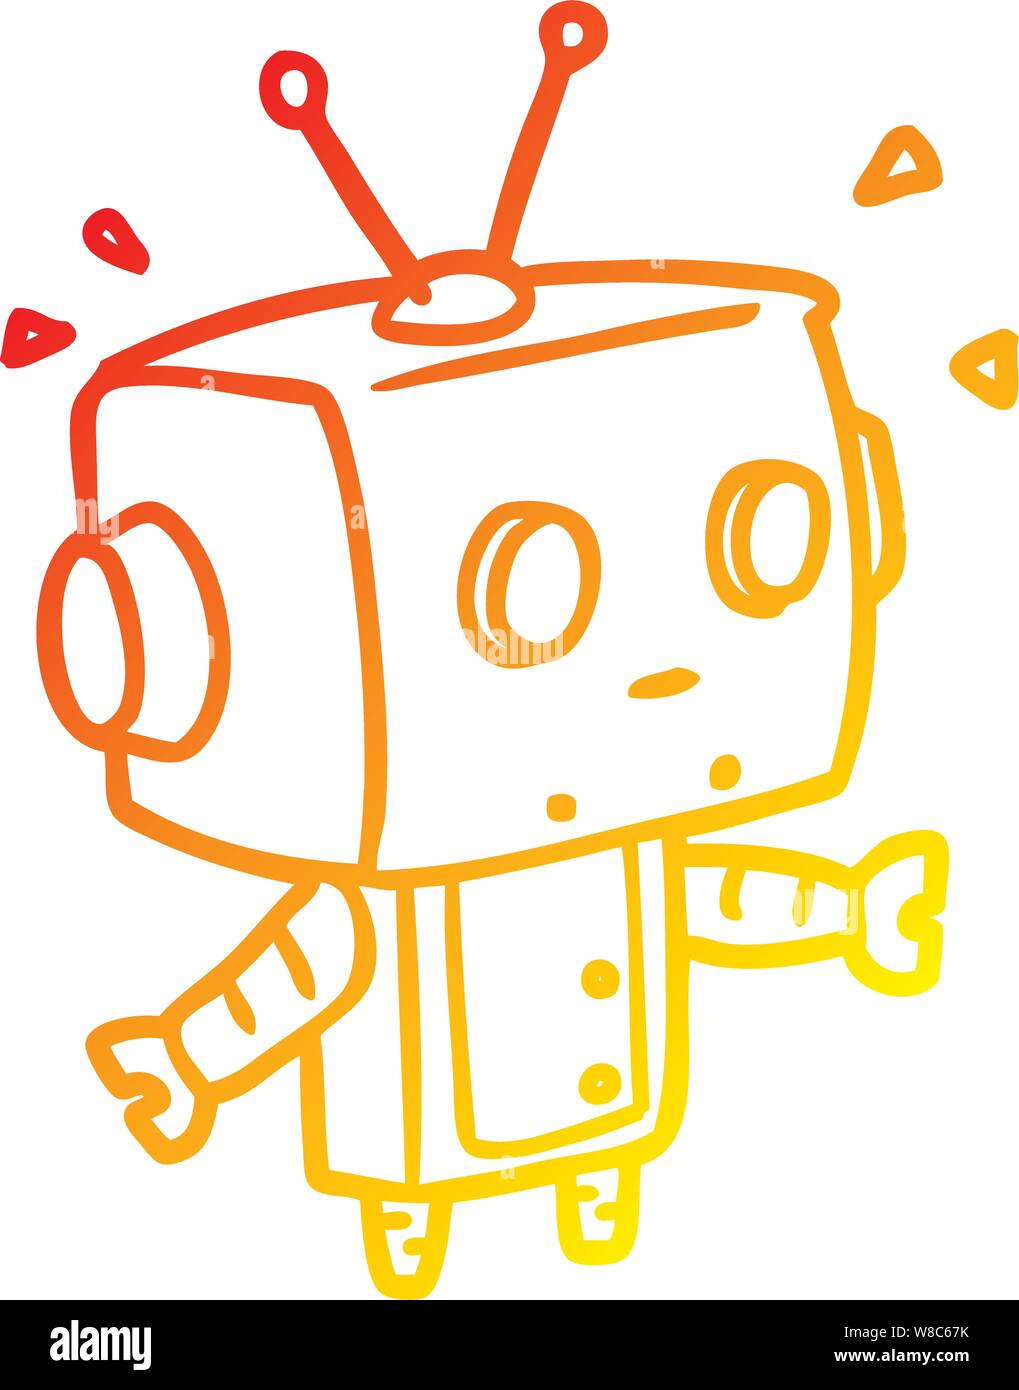 beholder Tilsyneladende tjenestemænd warm gradient line drawing of a cute surprised robot Stock Vector Image &  Art - Alamy